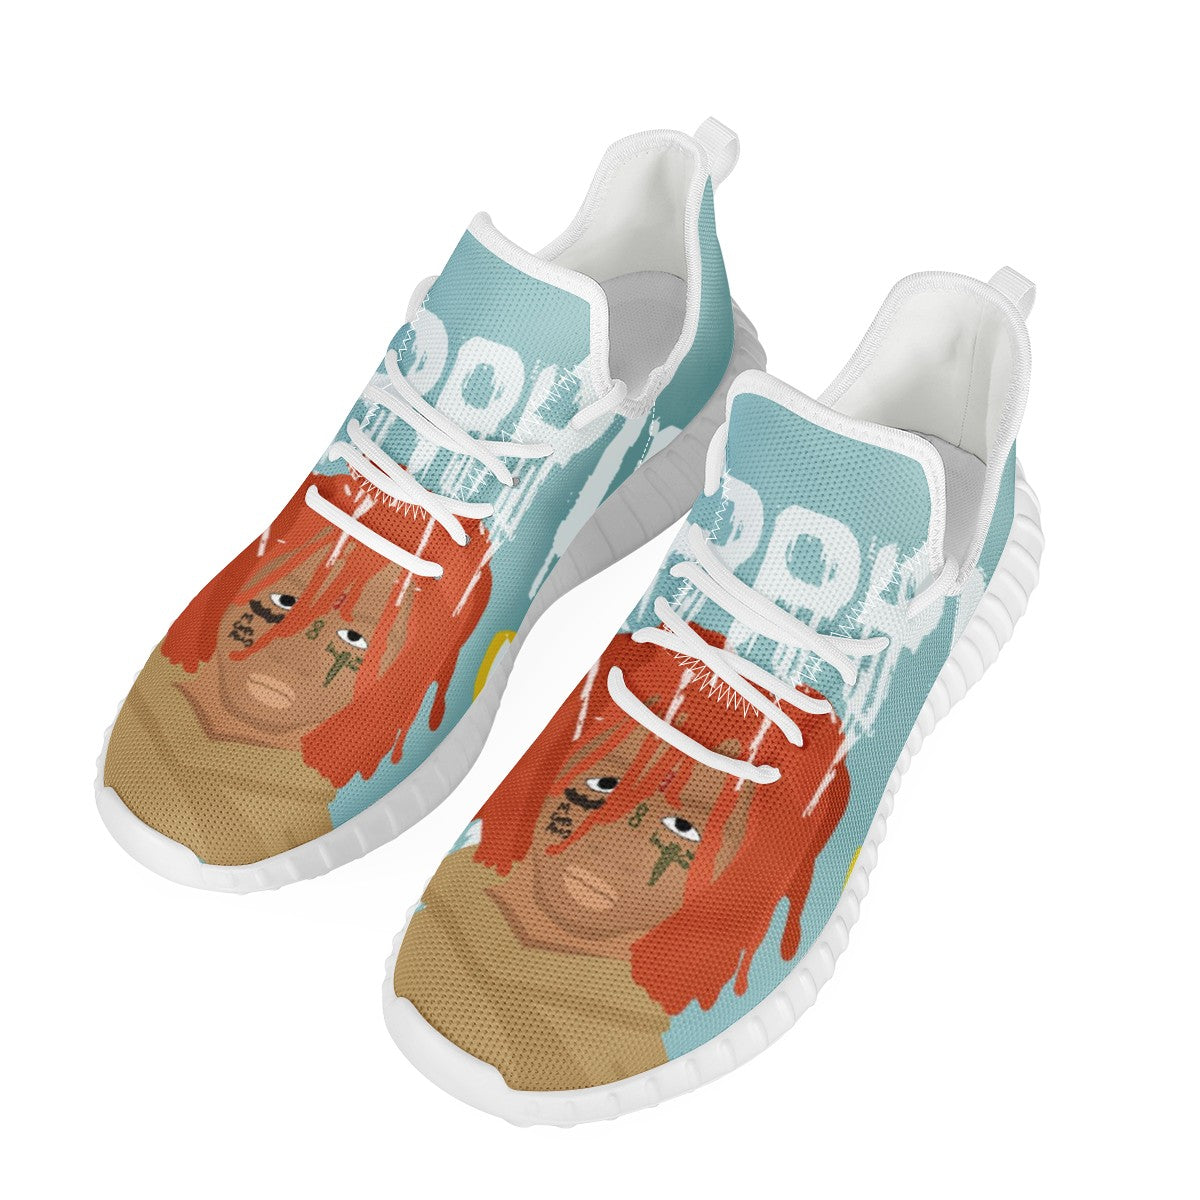 Trippie Redd Custom Yeezy Walking Shoes